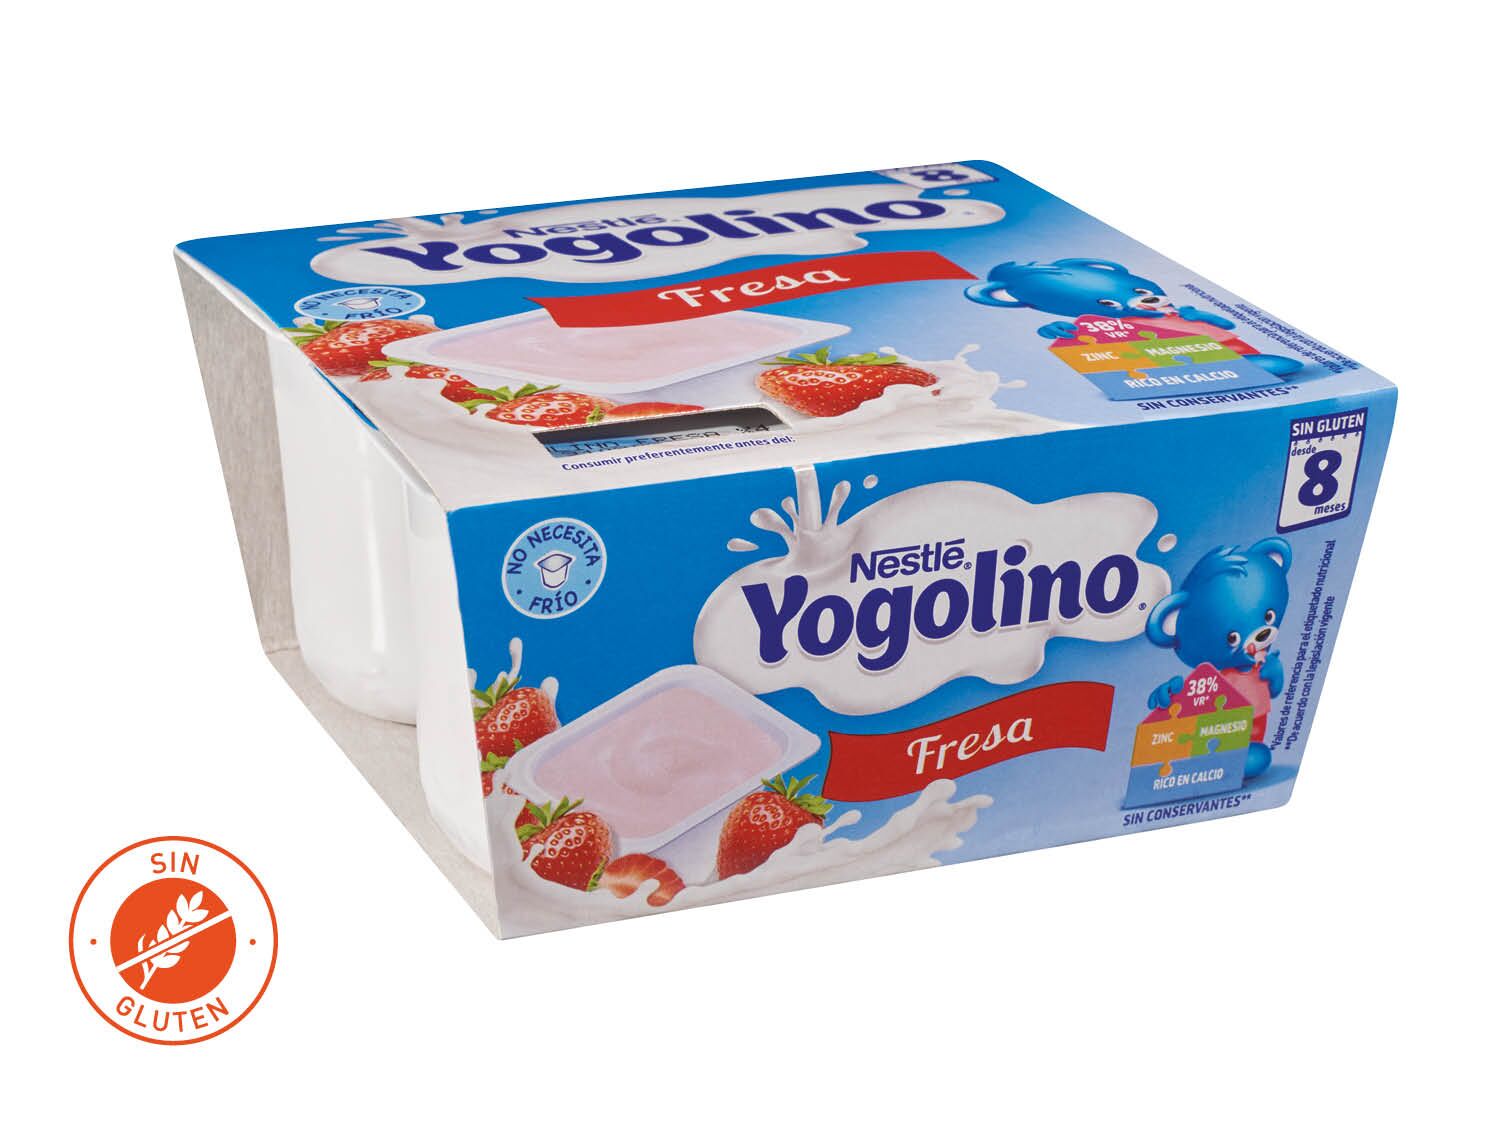 Nestlé® Yogolino